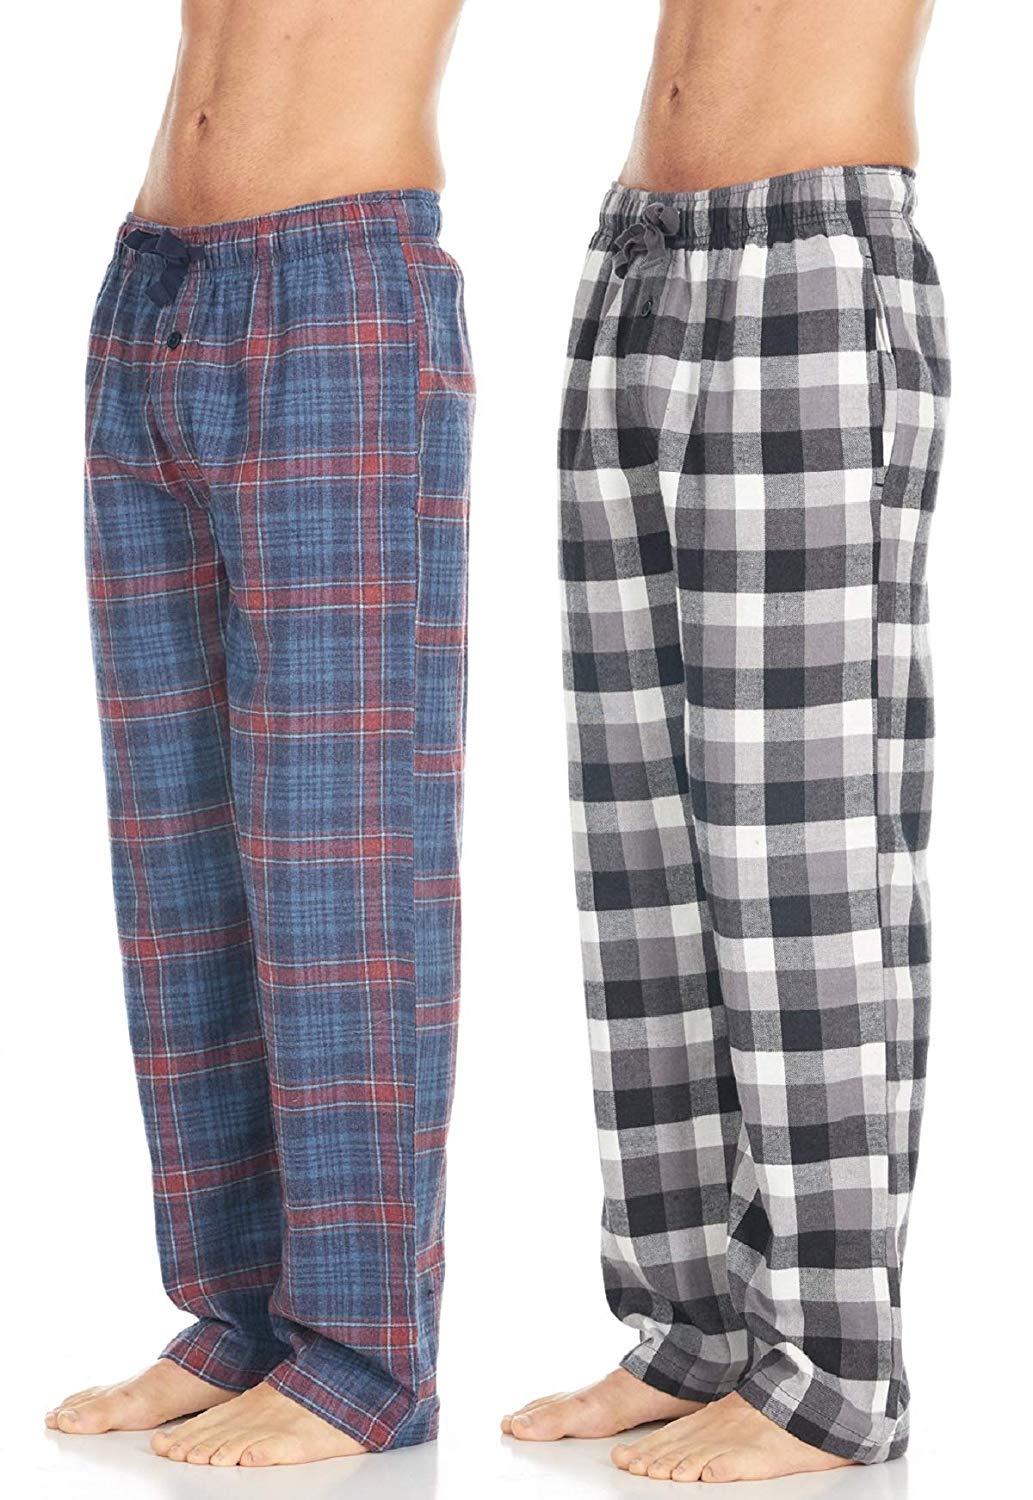 Common Cotton Pajama Pants Problems With Cotton Pajama Pants - Silk ...